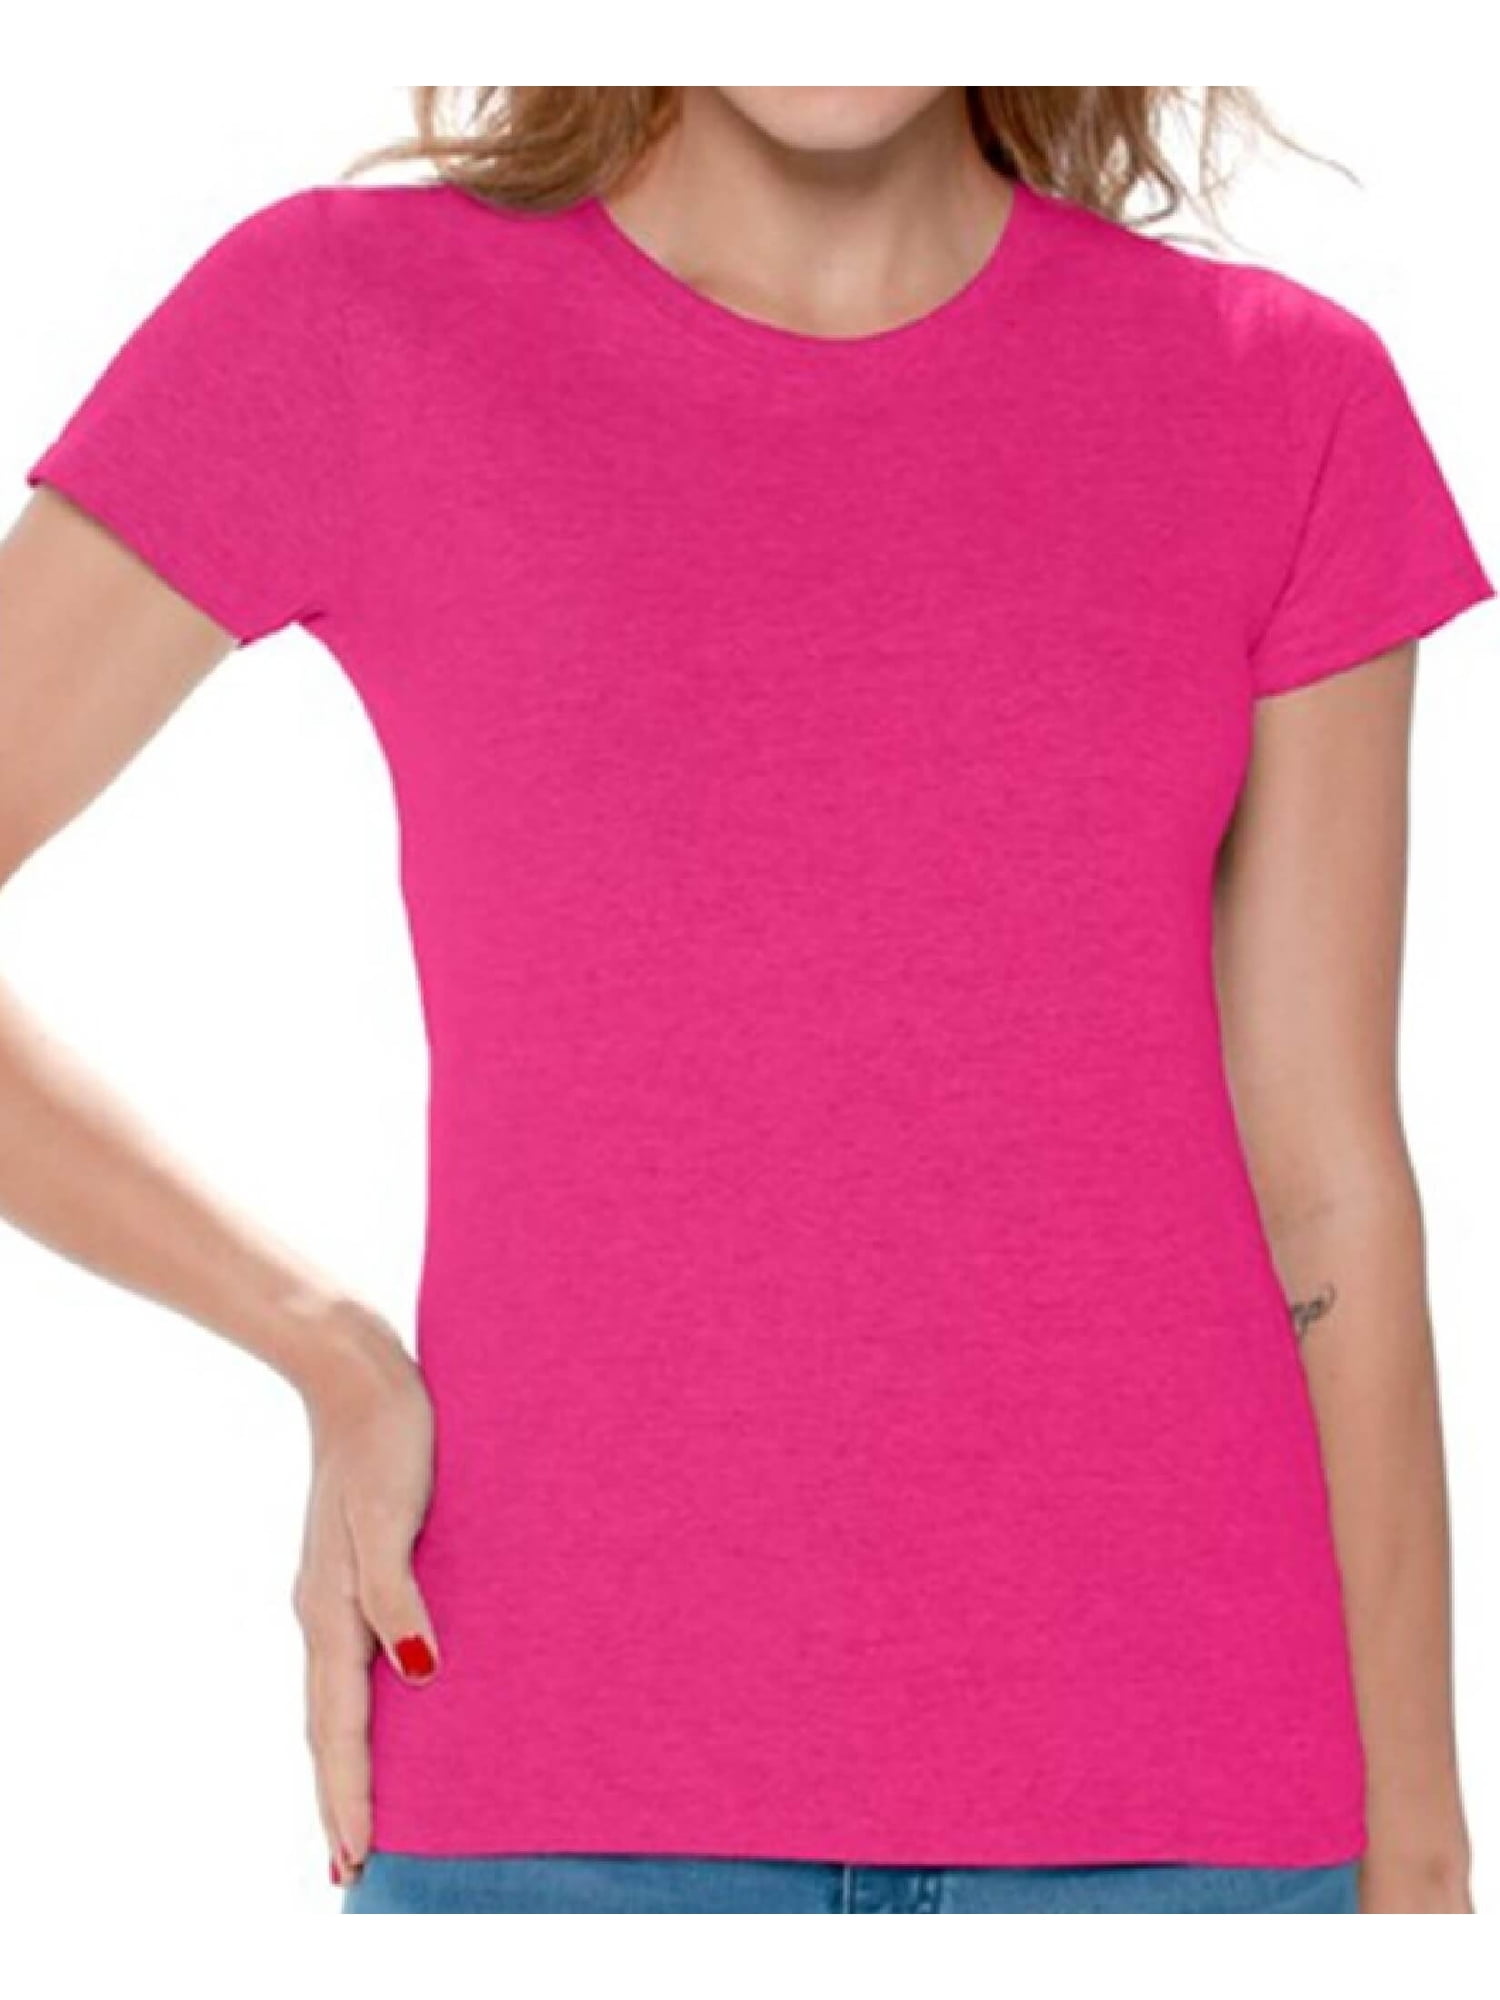 Gildan Women Pink T-Shirts Value Pack ...